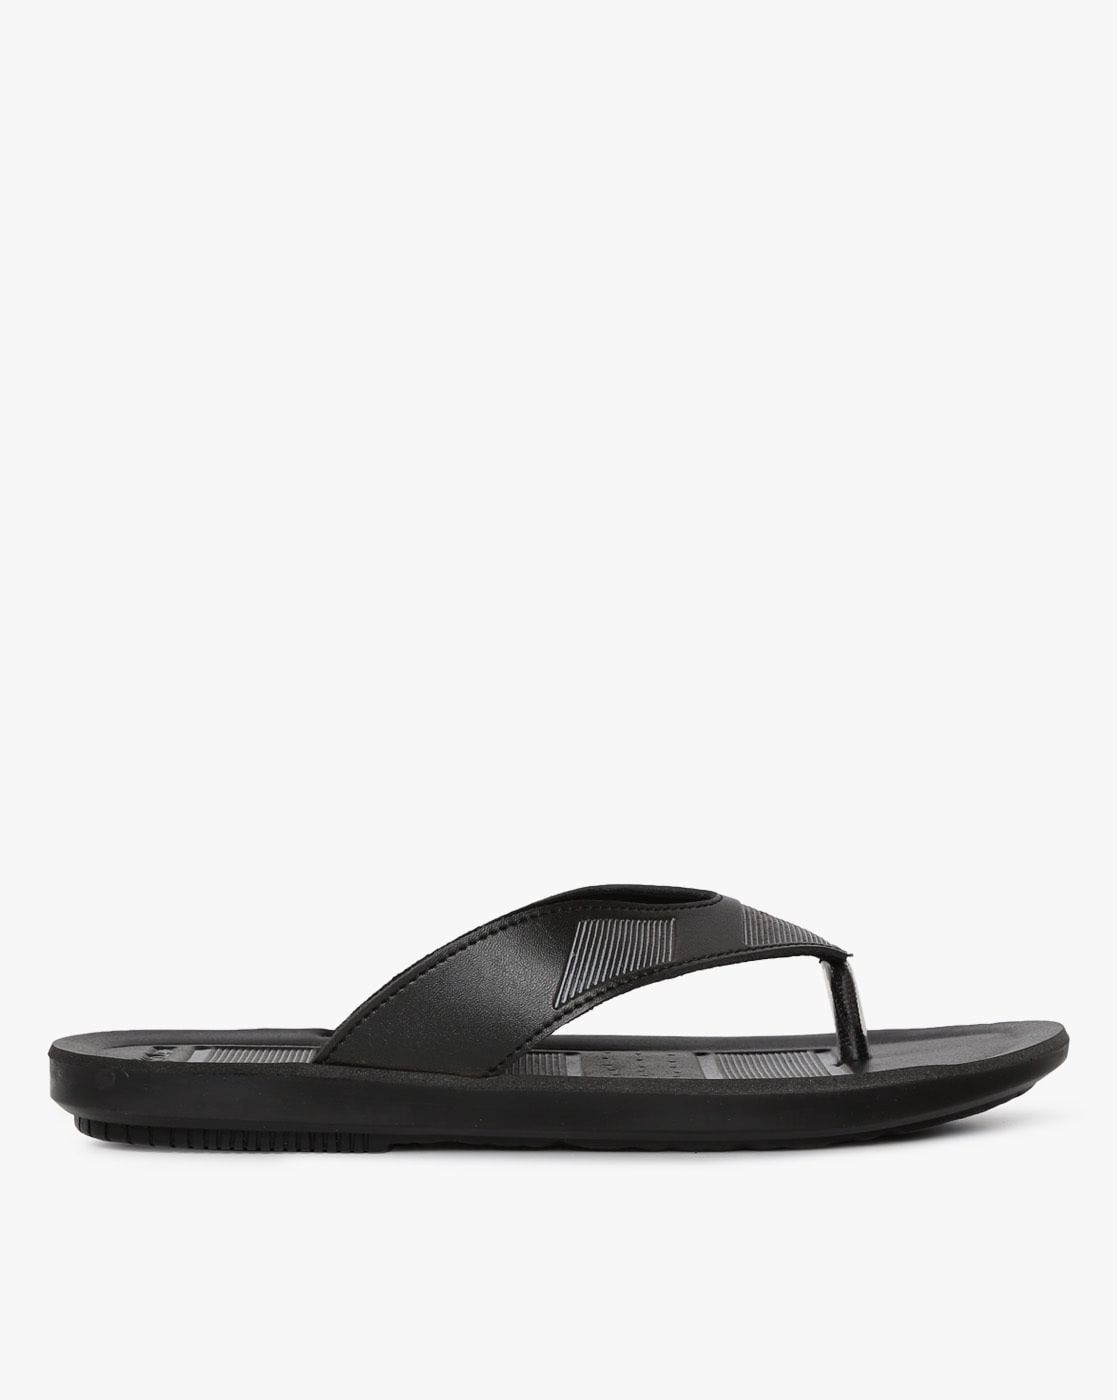 inblu slippers online